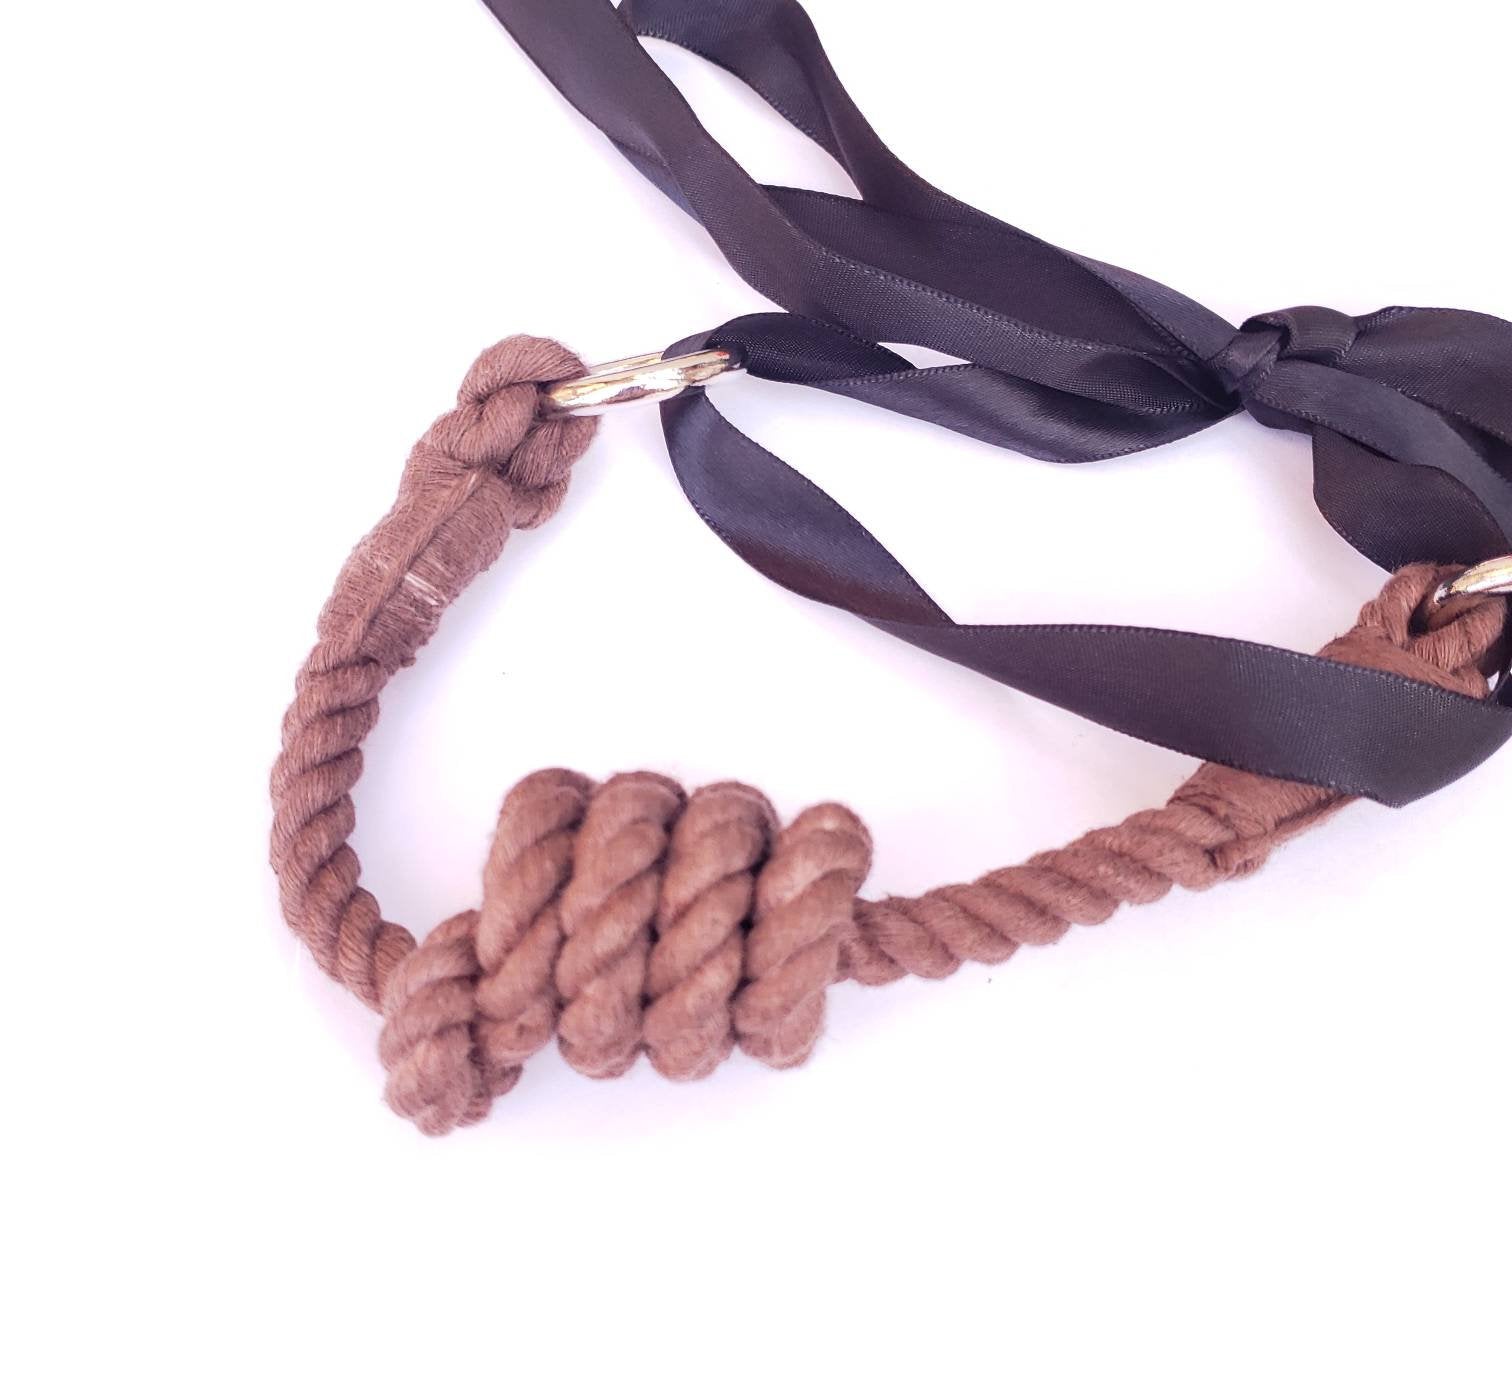 Brown Rope Bit Gag, 100% Cotton Rope BDSM Gag | Vixen's Hidden Desires